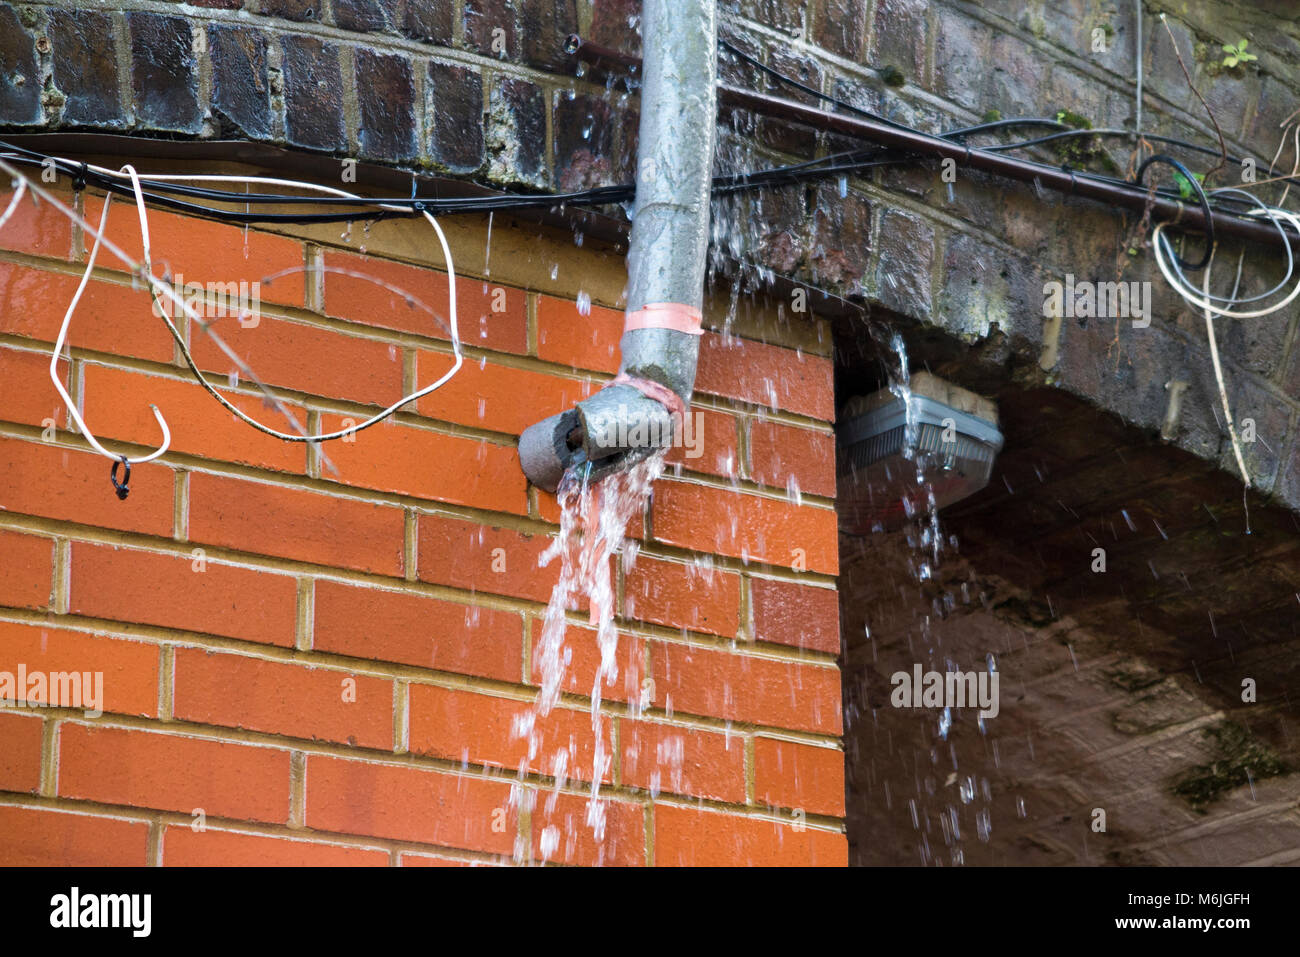 Eine undichte Wasserleitung, die ein Leck in der tauwetterperiode nach in  Tagen von Frost mit Schnee und Temperaturen unter Null einfrieren  entsprungen ist. UK Stockfotografie - Alamy